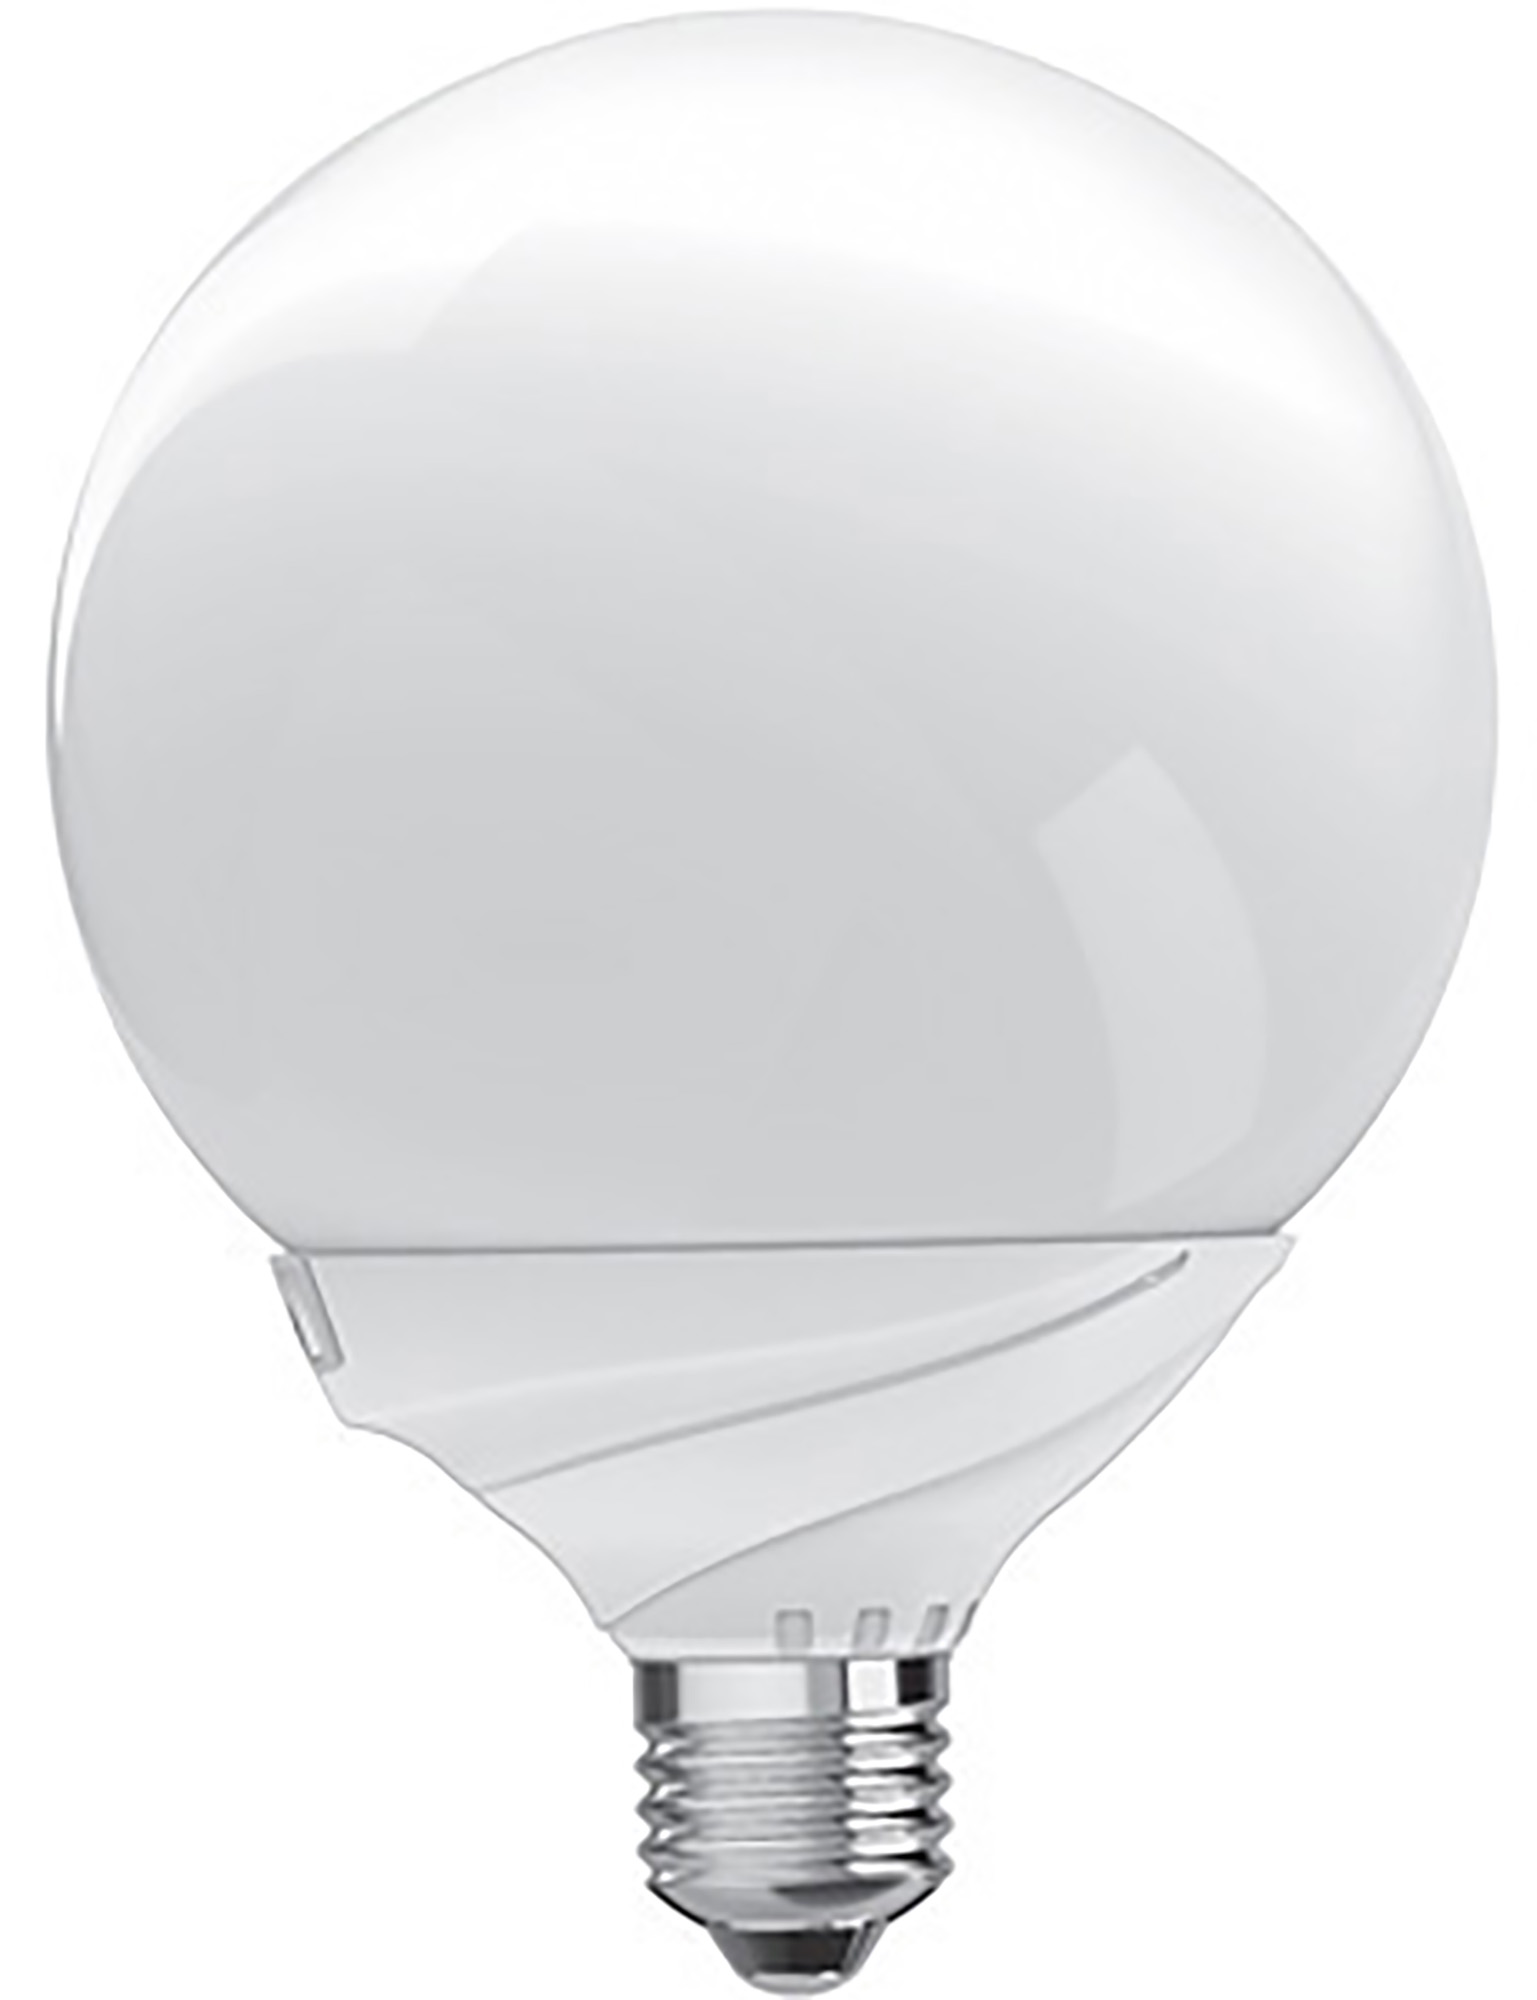 Curvodo LED Lamps Luxram Globes